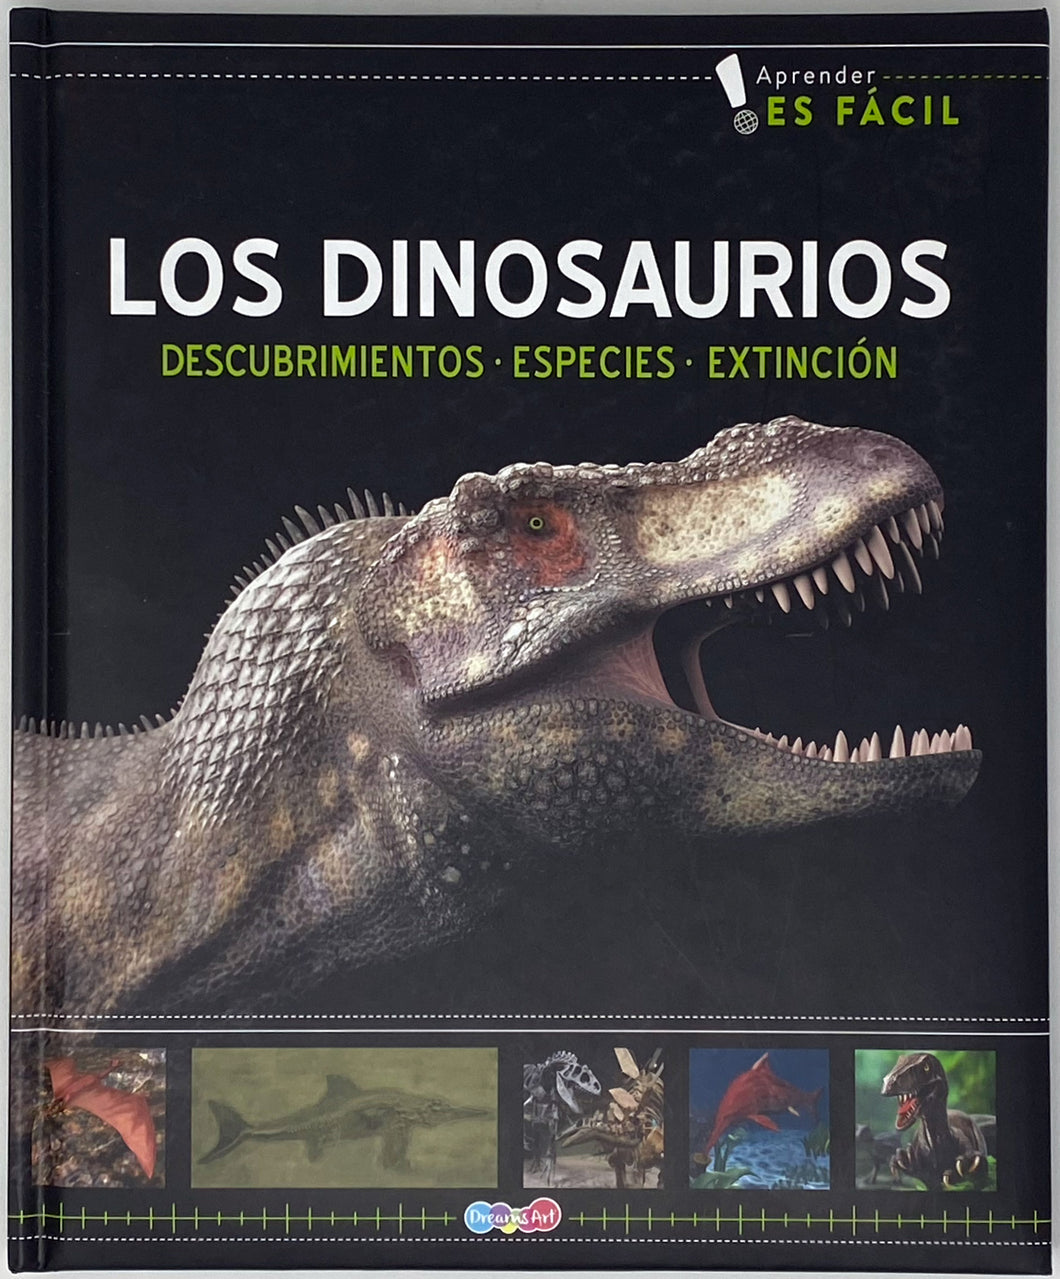 Los Dinosaurios: Descubrimientos, Especies, Extinción